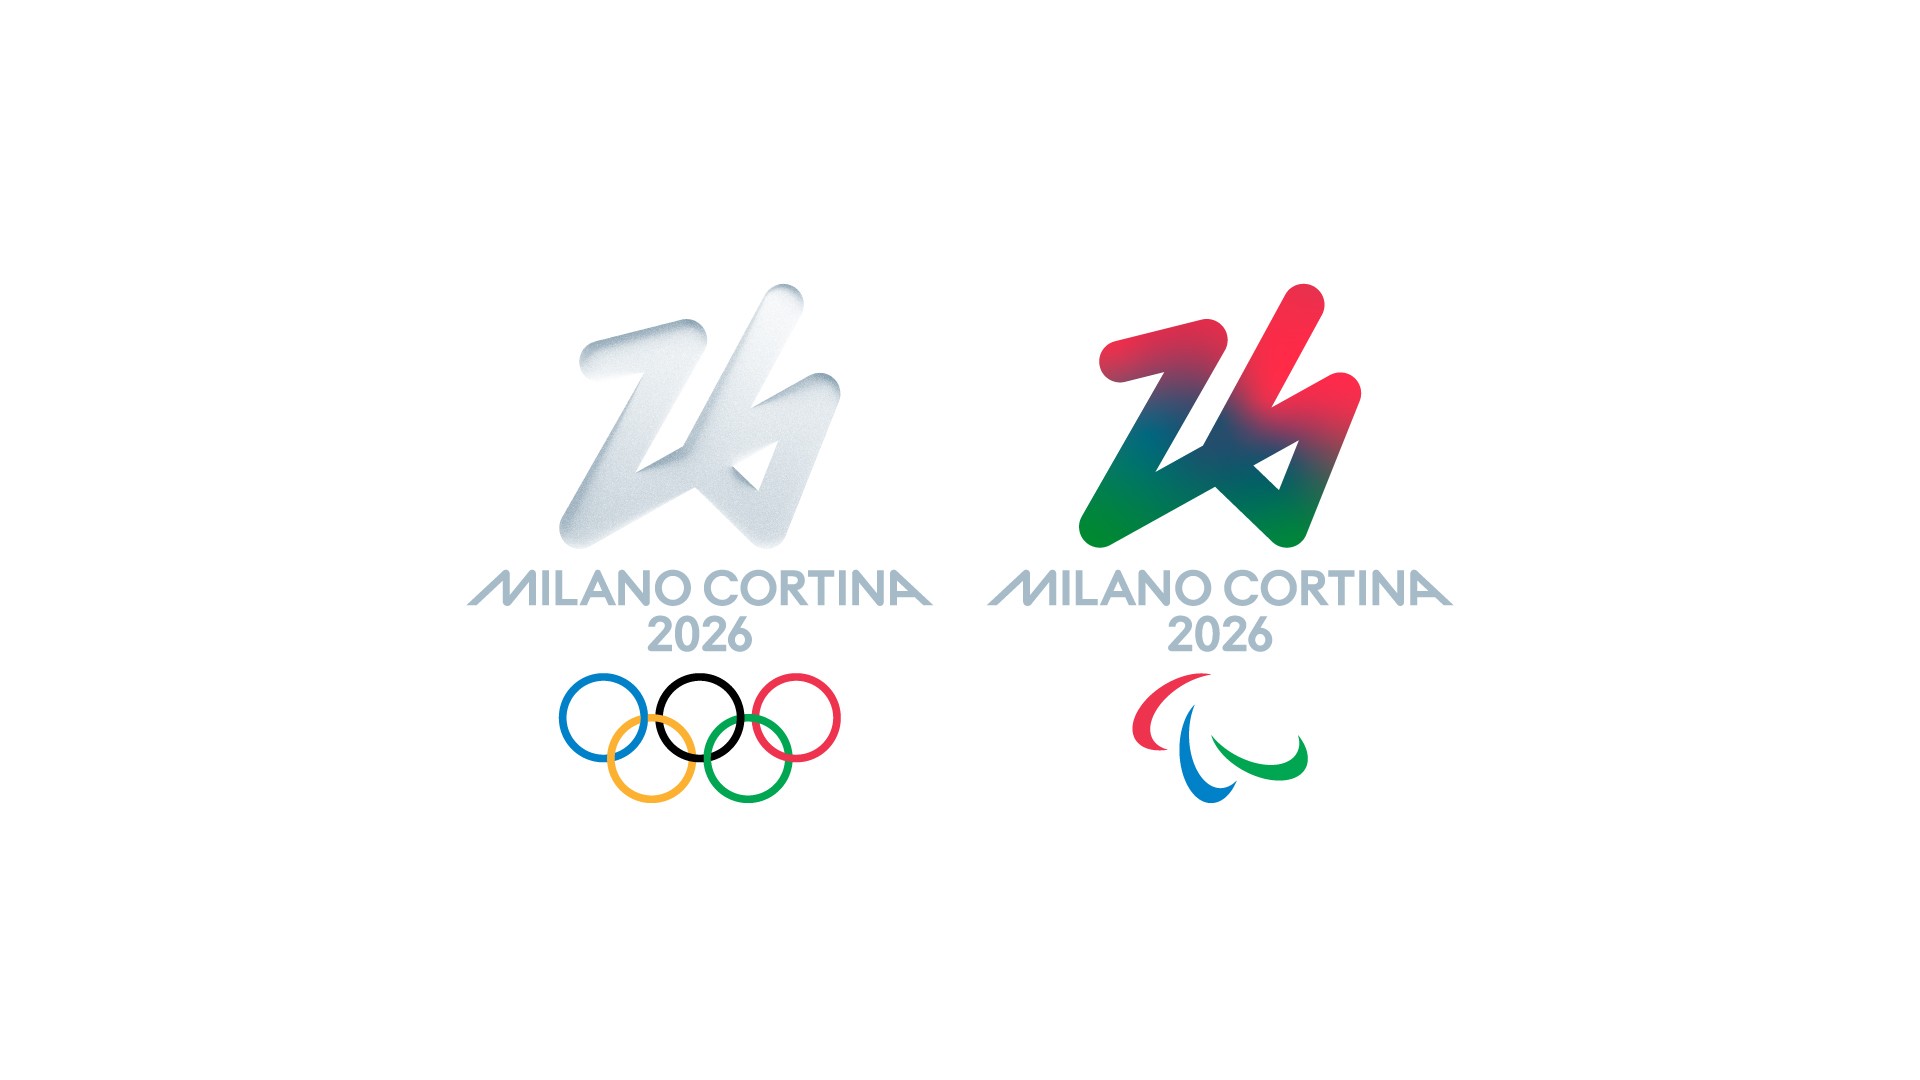 2026 Milan Cortina – logo